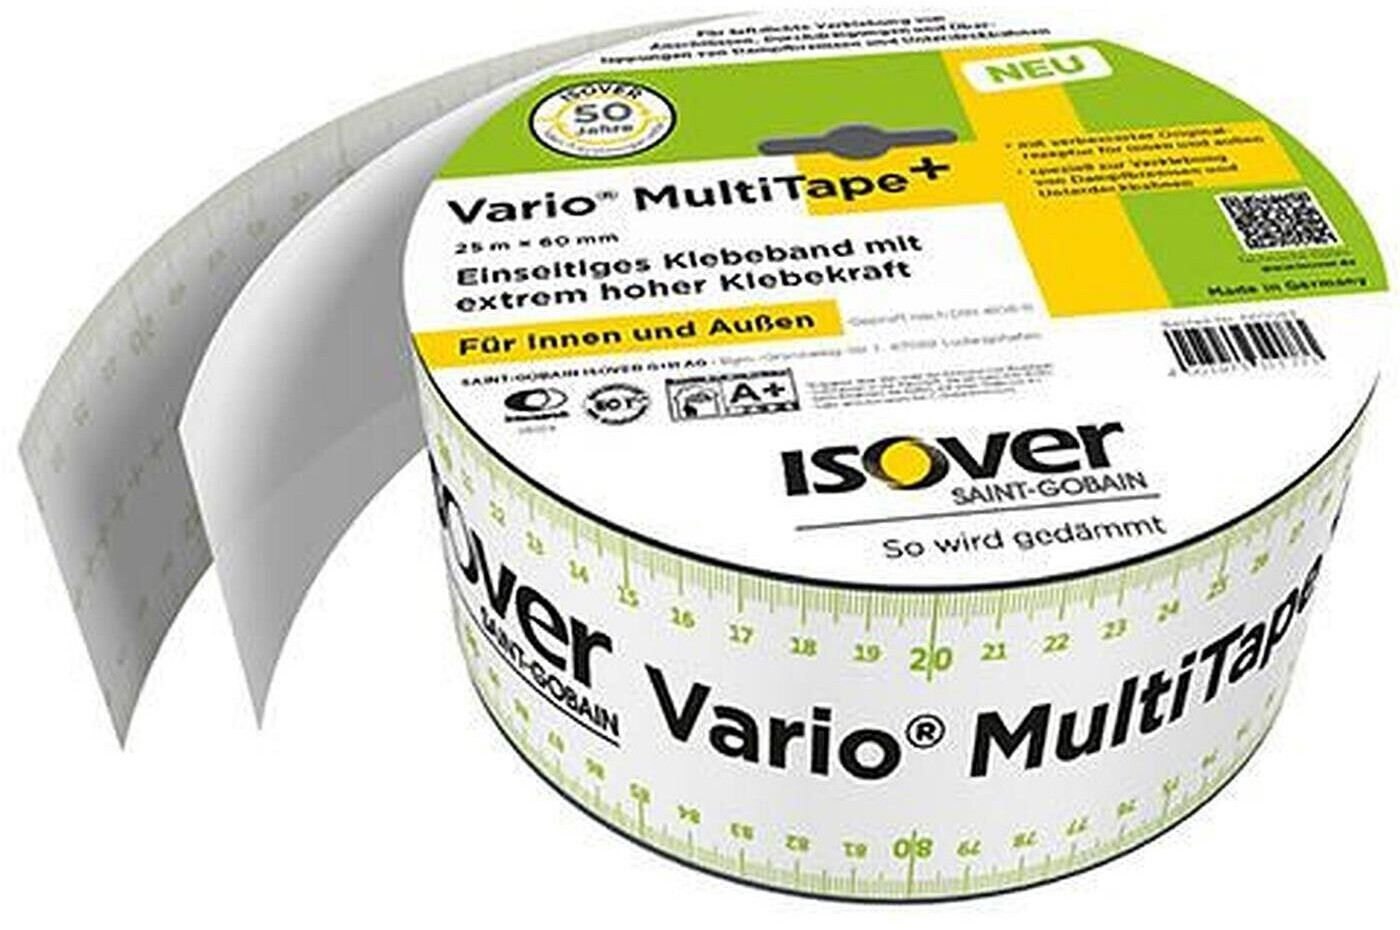 ISOVER Klebeband Vario® MultiTape+ mit einseitigen Streifen für